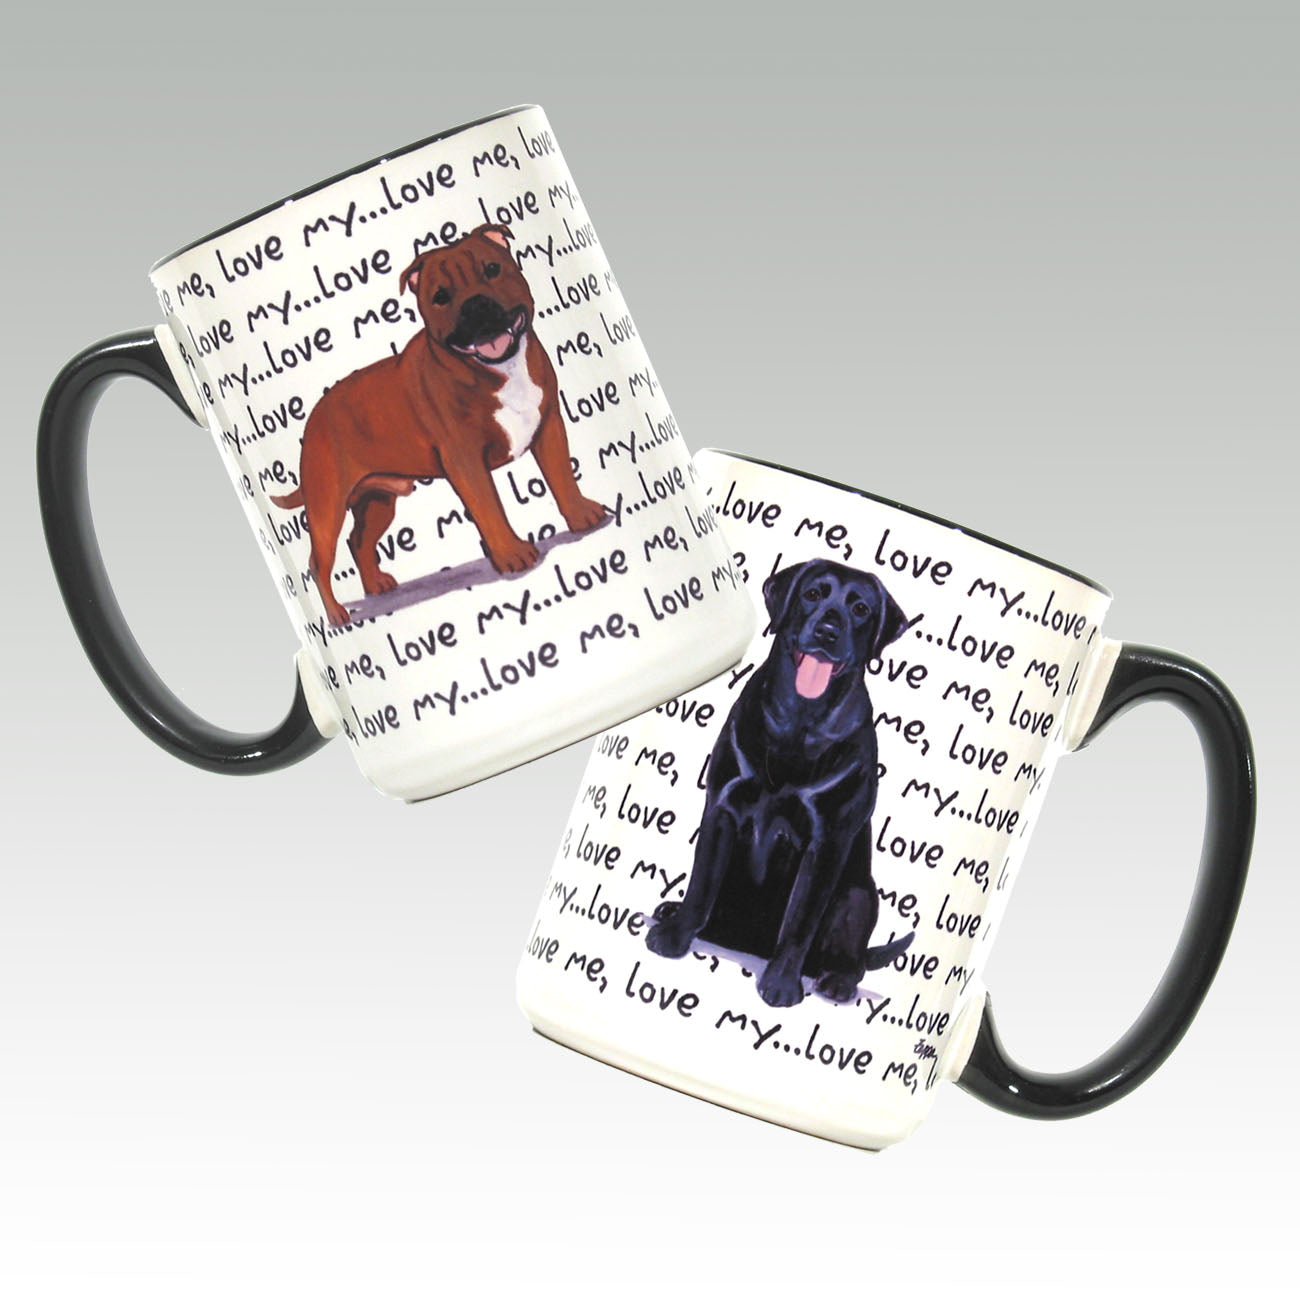 Love me love my pet mugs.